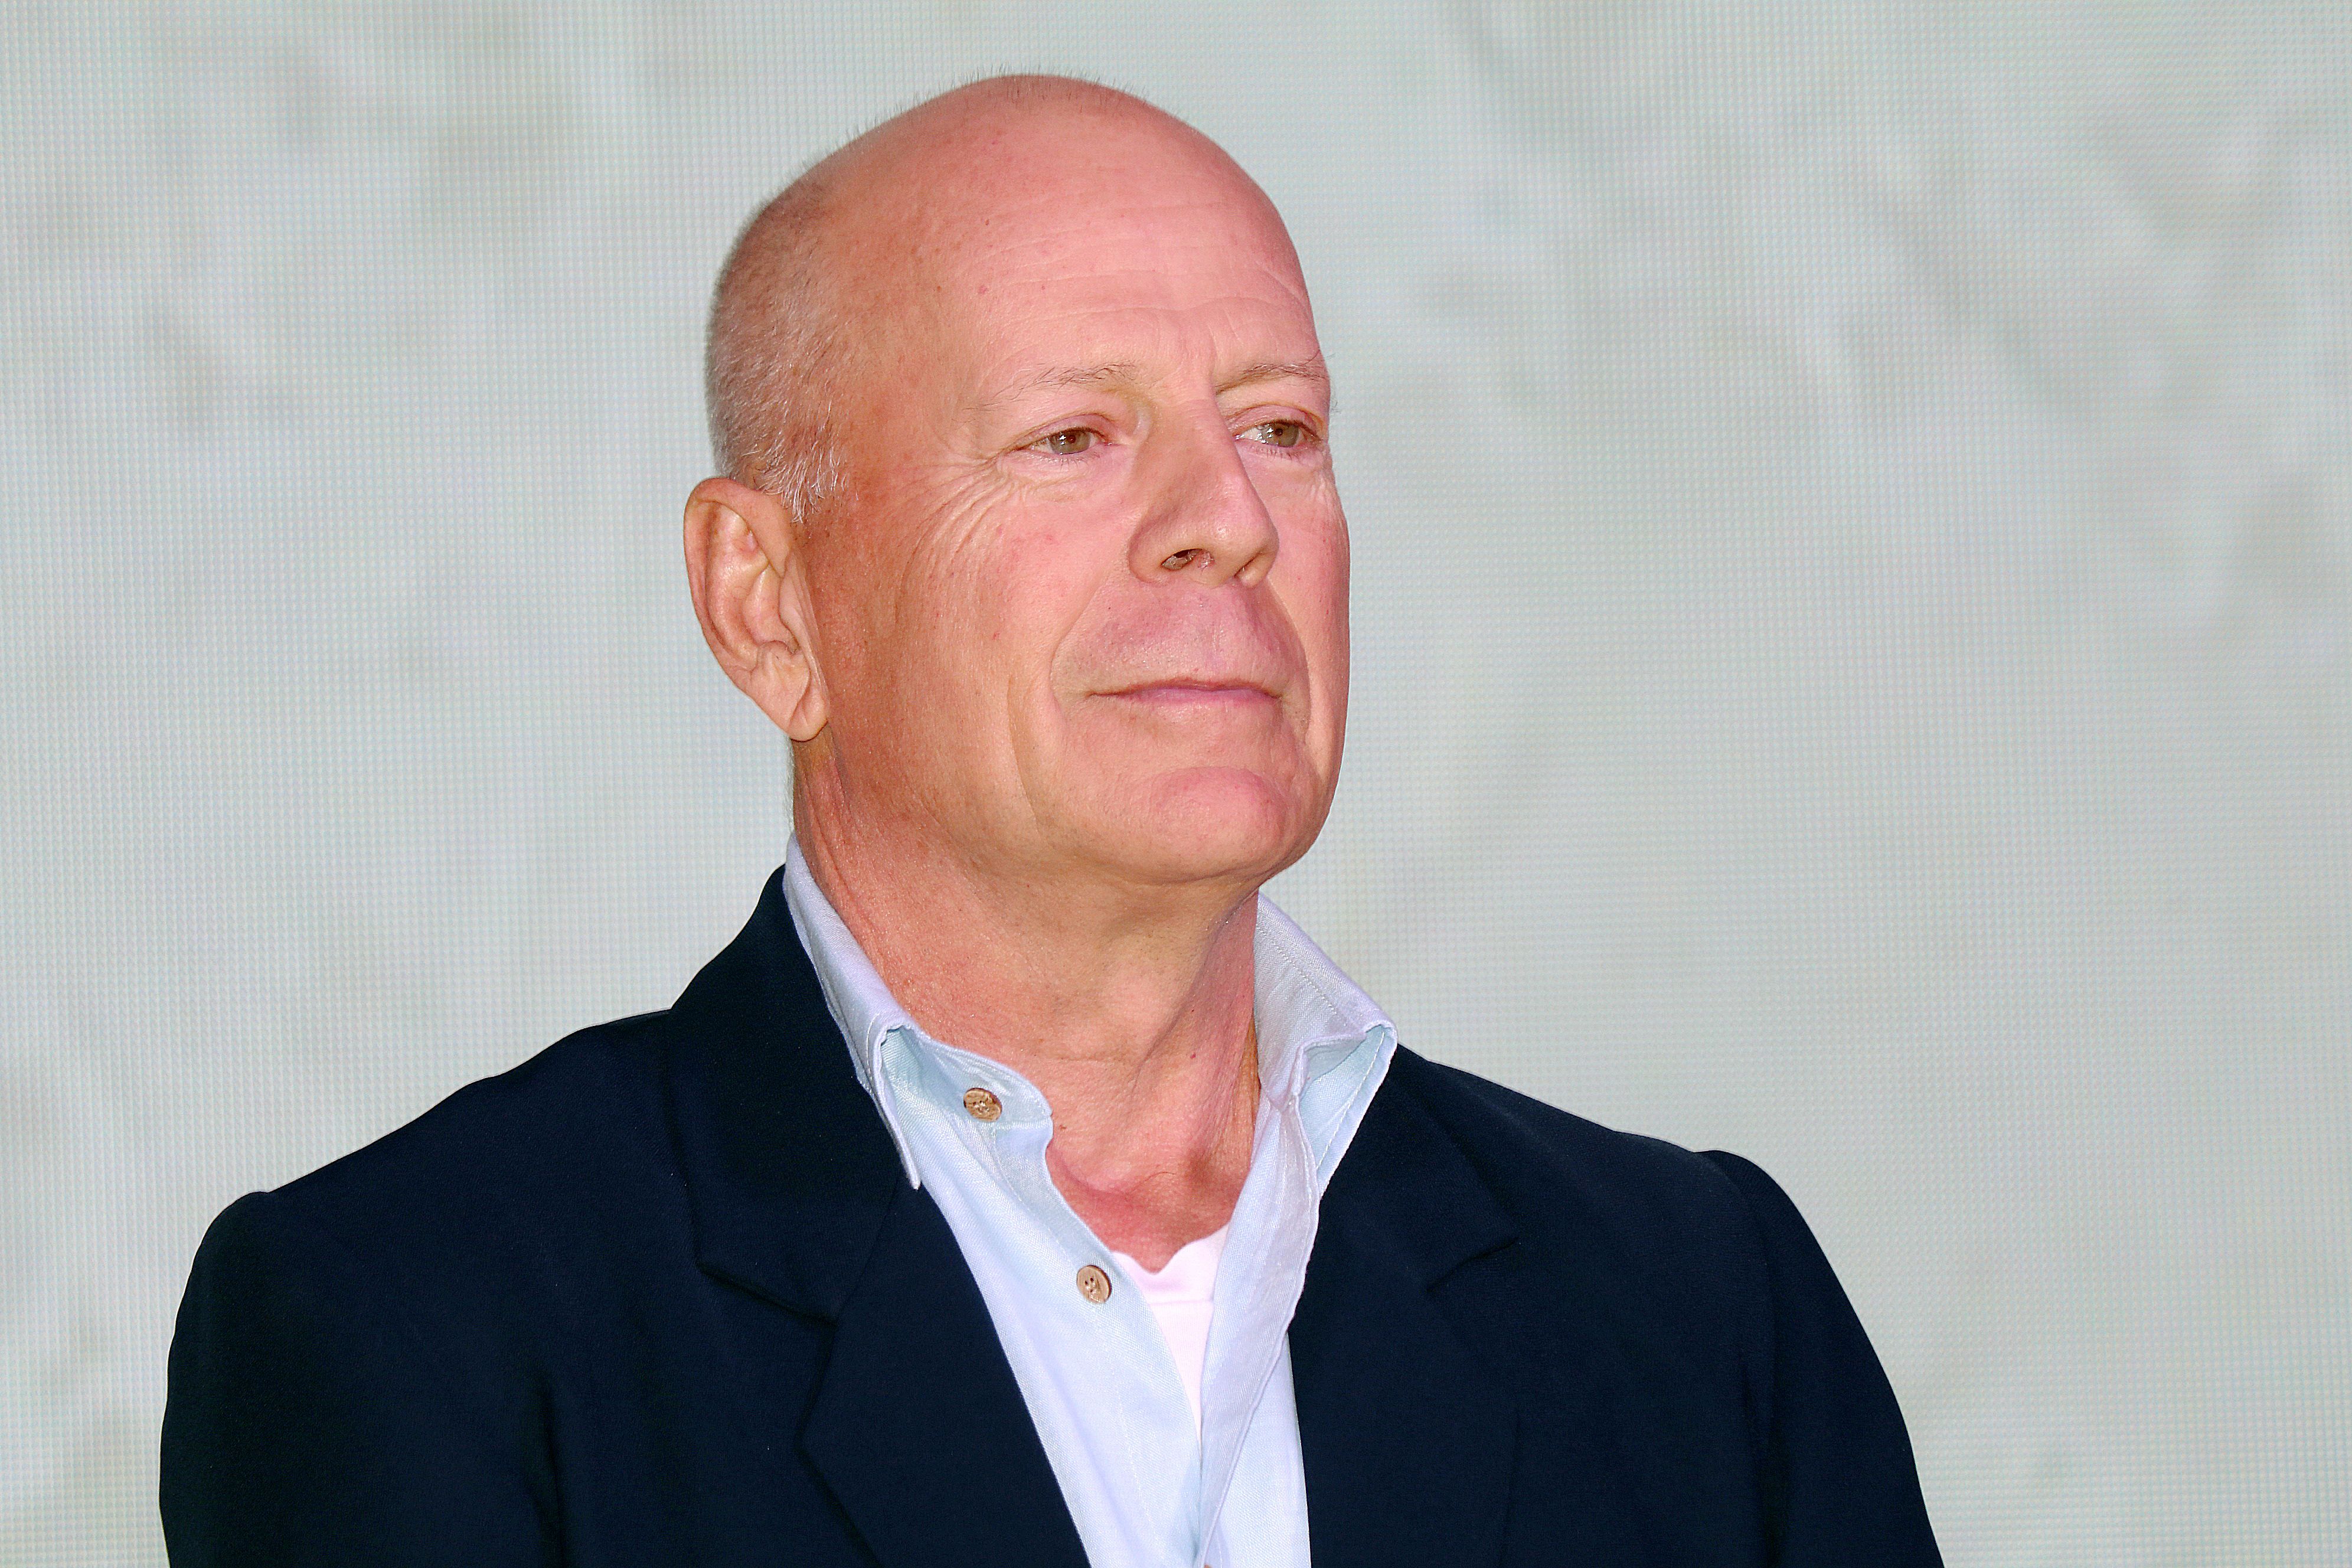 Depuis l'annonce de la retraite de Bruce Willis liée à son aphasie, de nombreux témoignages surgissent...